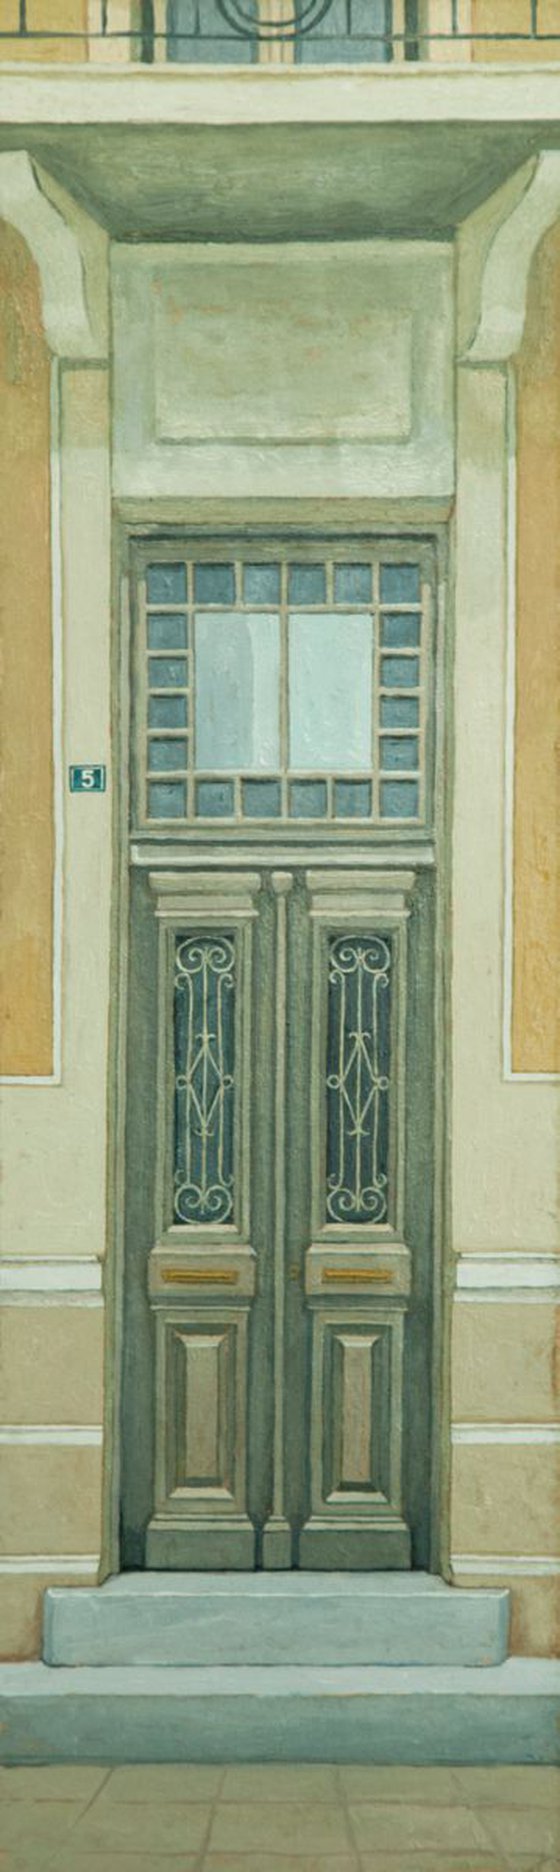 Old door I